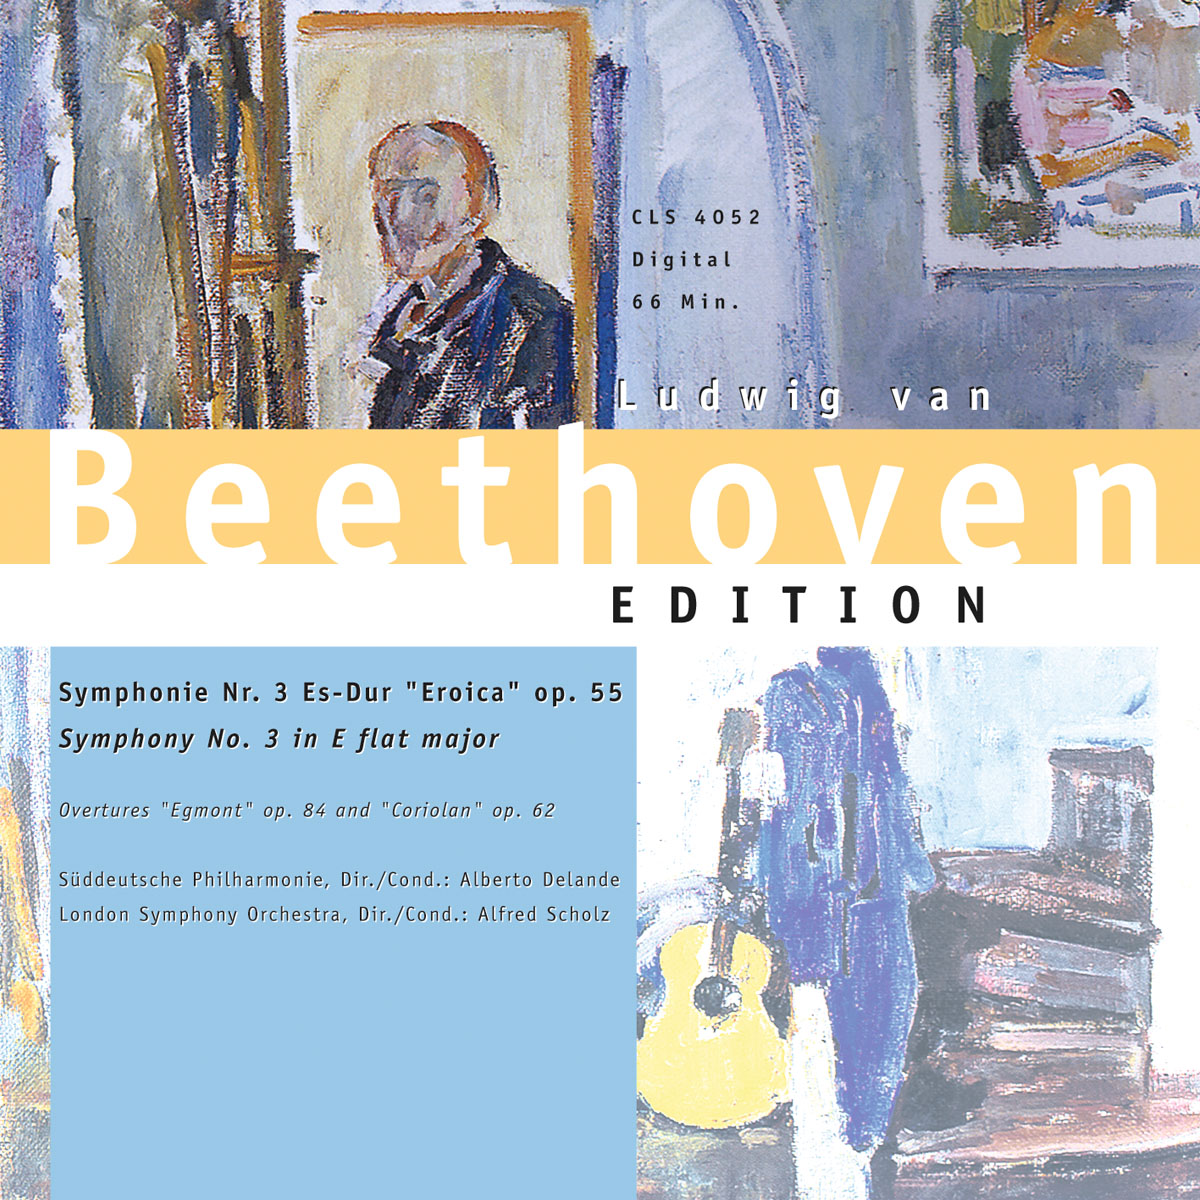 CD Beethoven - Symphonie nr.3 Es-Dur Eroica op.55, Egmont, Coriolan - Alberto Delande